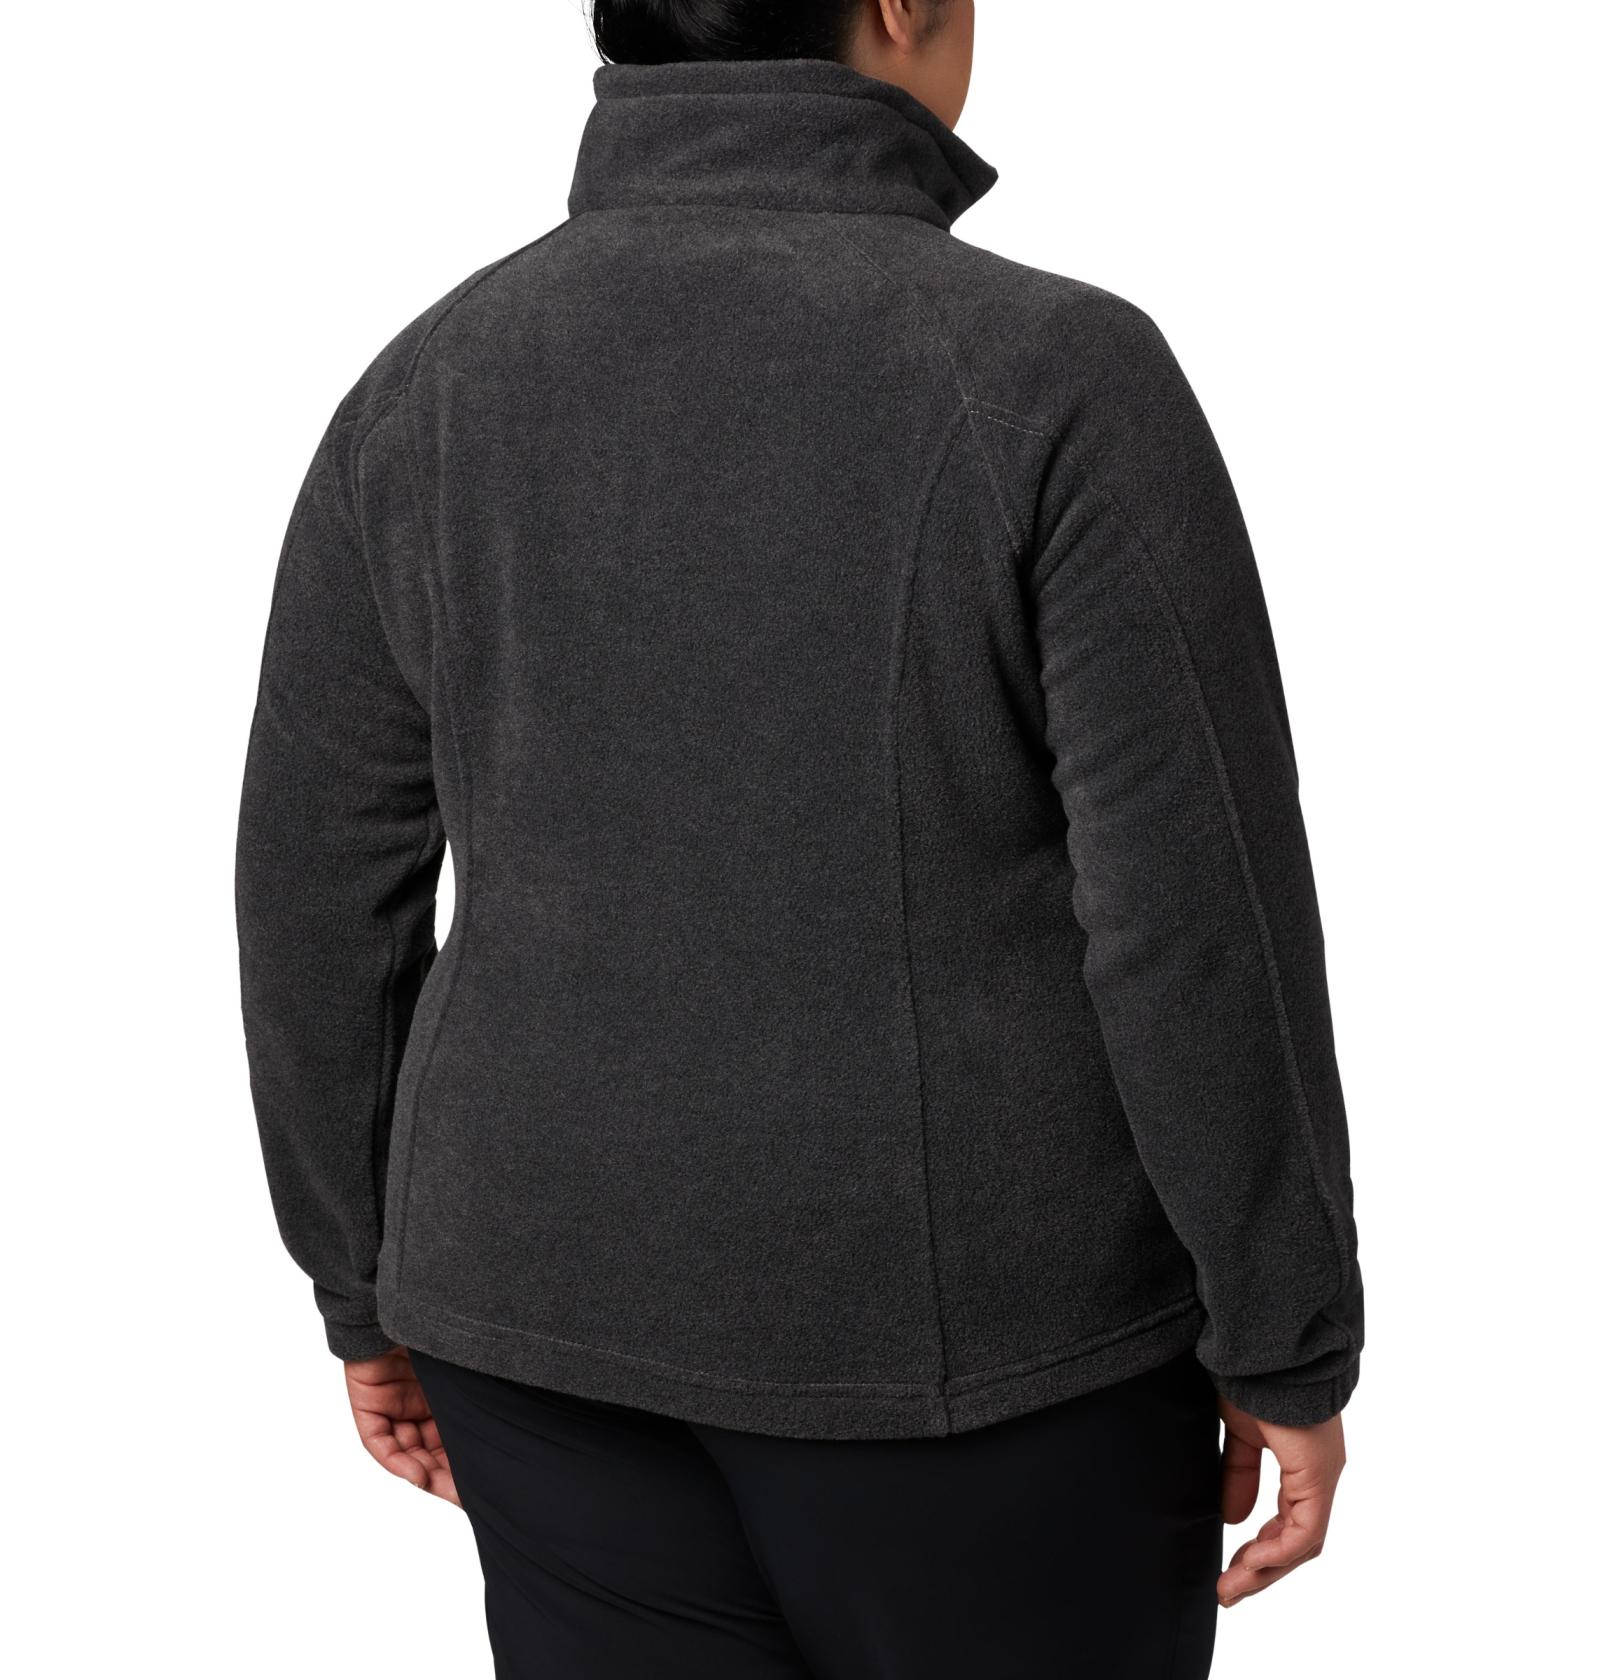 Columbia Women’s Benton Springs Full Zip Fleece Jacket Charcoal